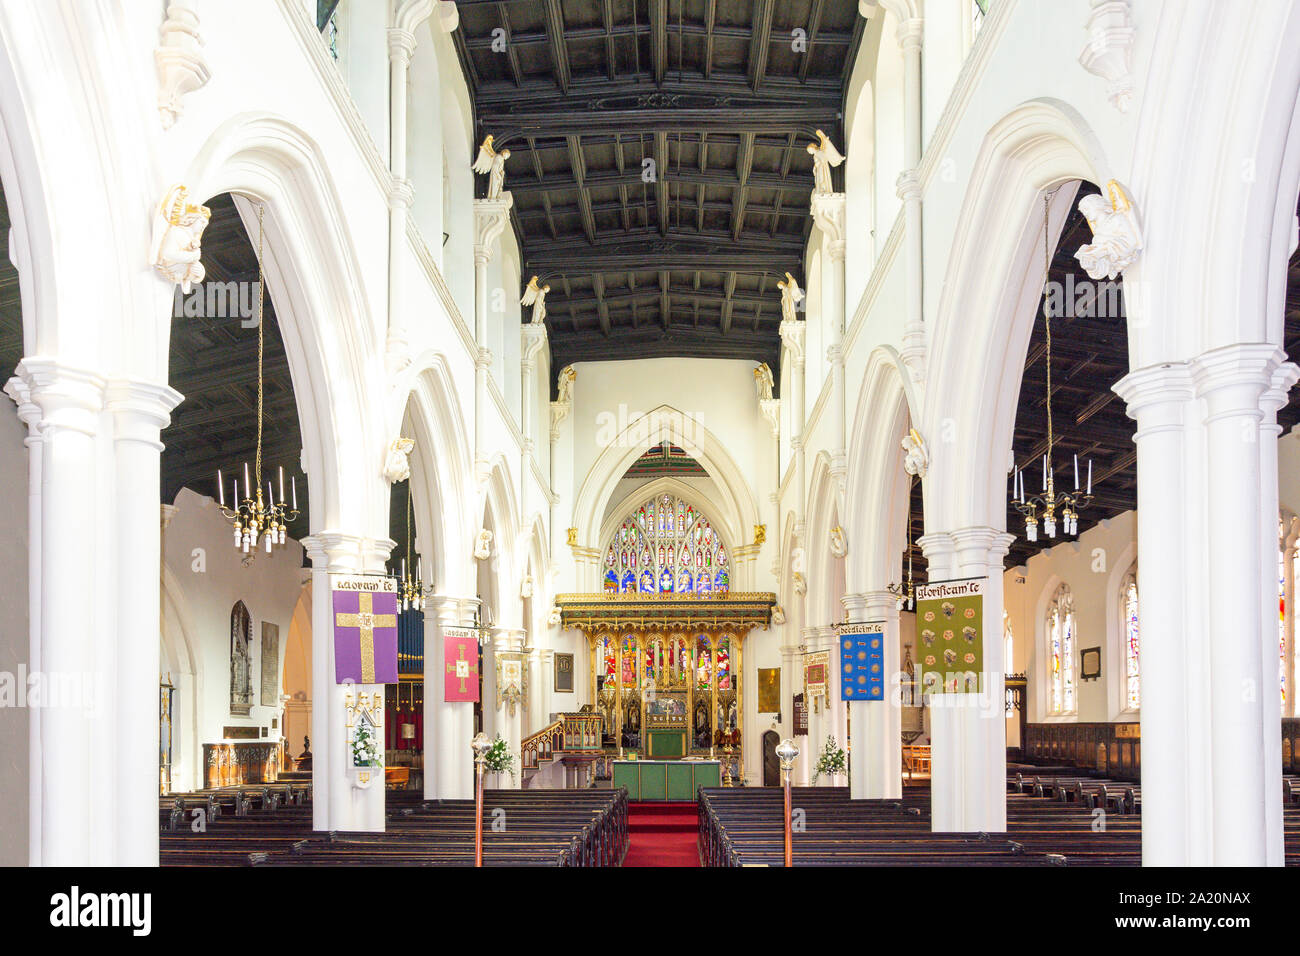 Foto 6x4 All Saints Church hemswell c2016 